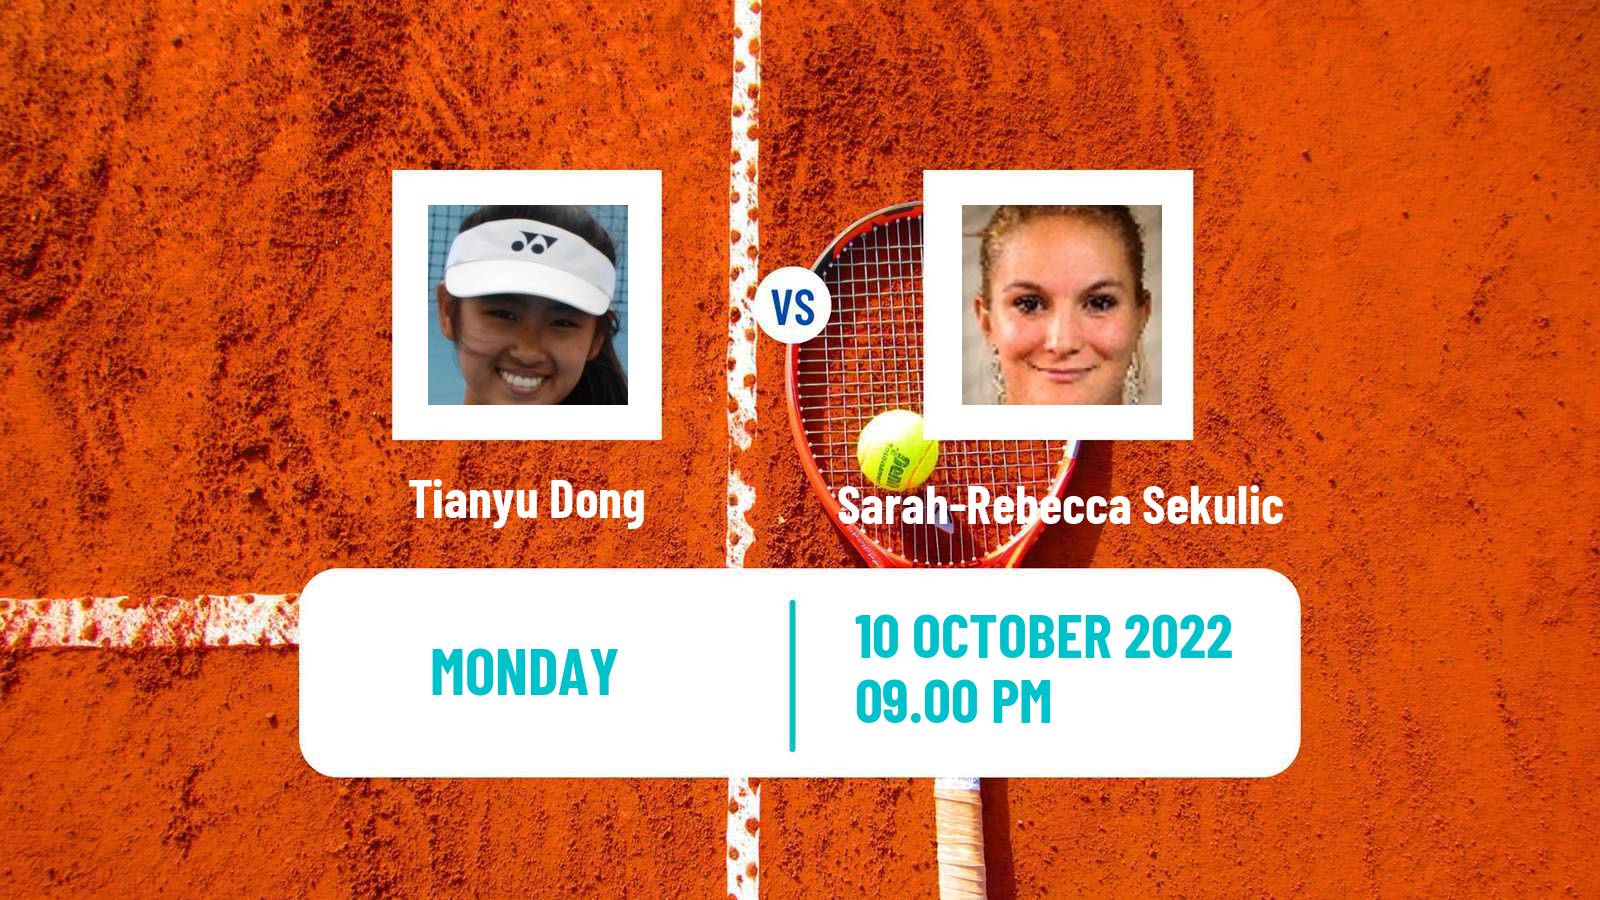 Tennis ITF Tournaments Tianyu Dong - Sarah-Rebecca Sekulic